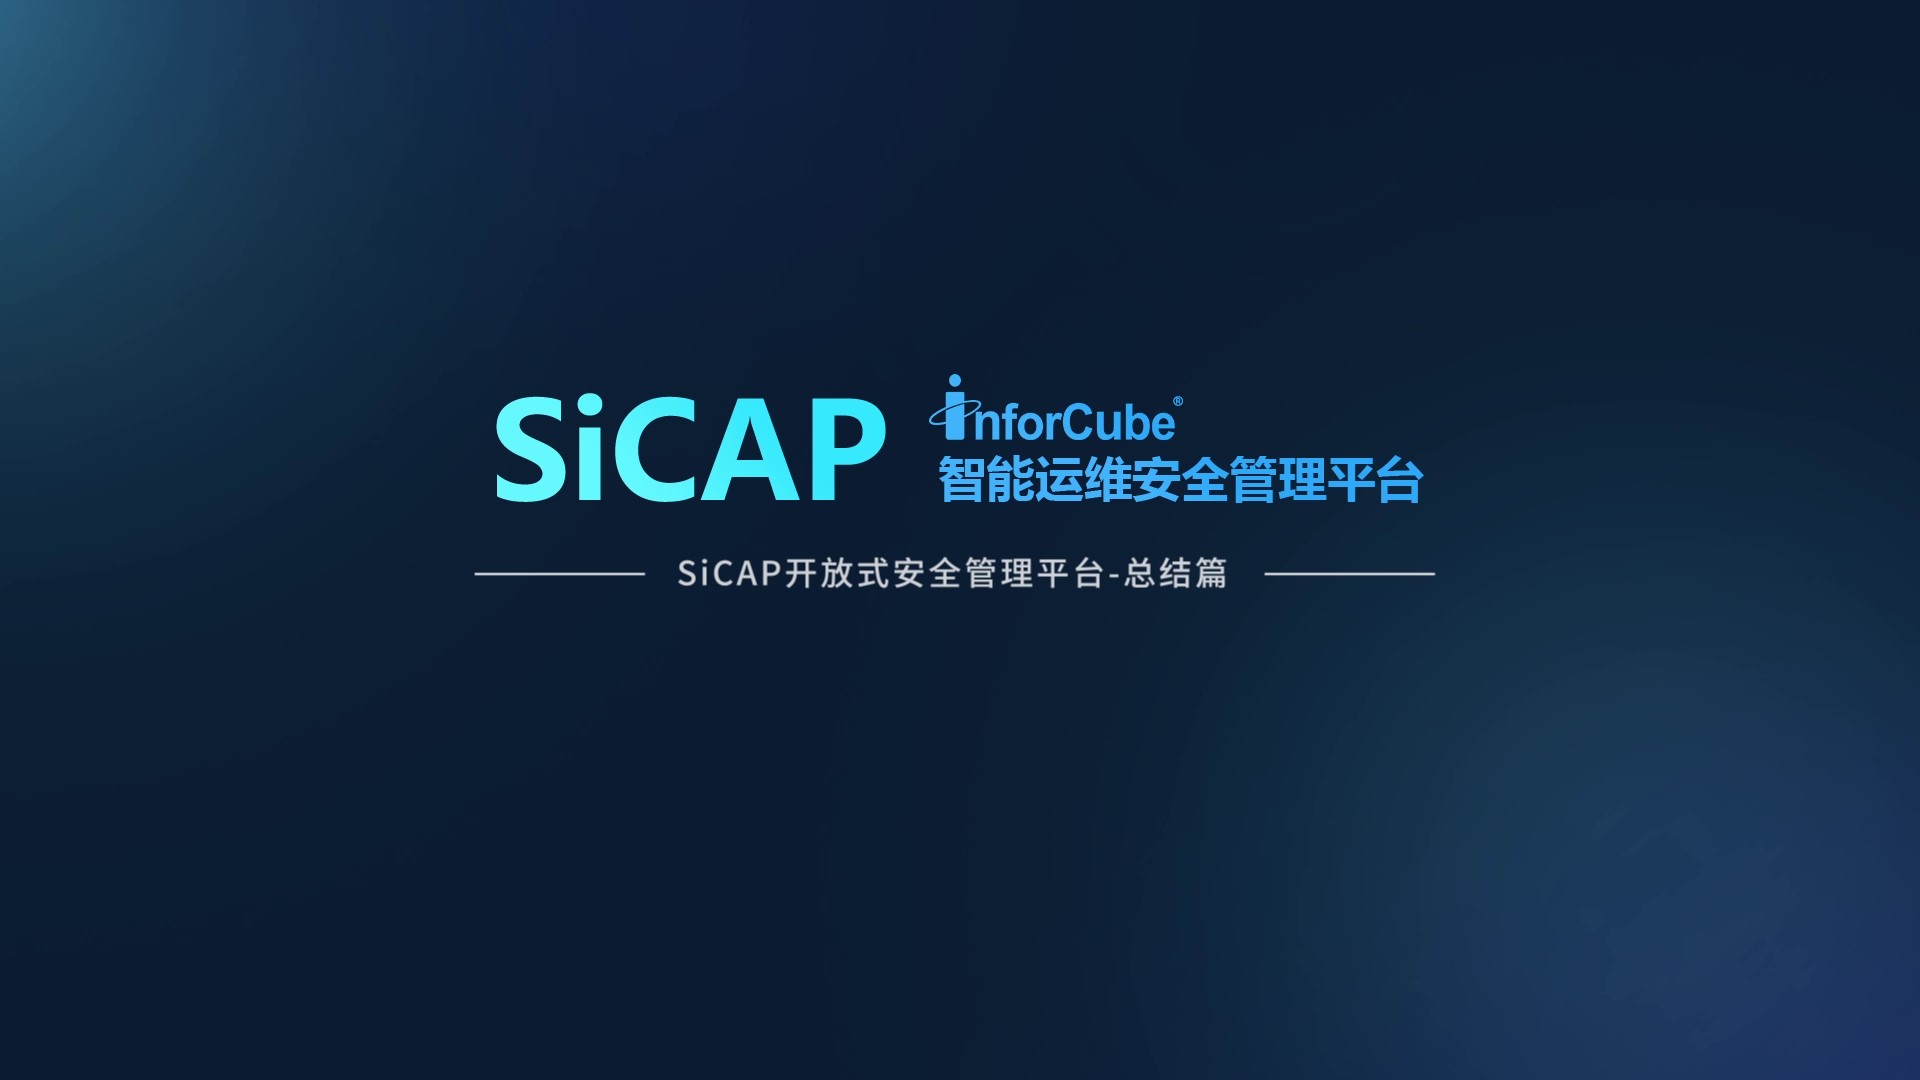 SiCAP開(kāi)放(fàng)式安全管理平台-總結篇